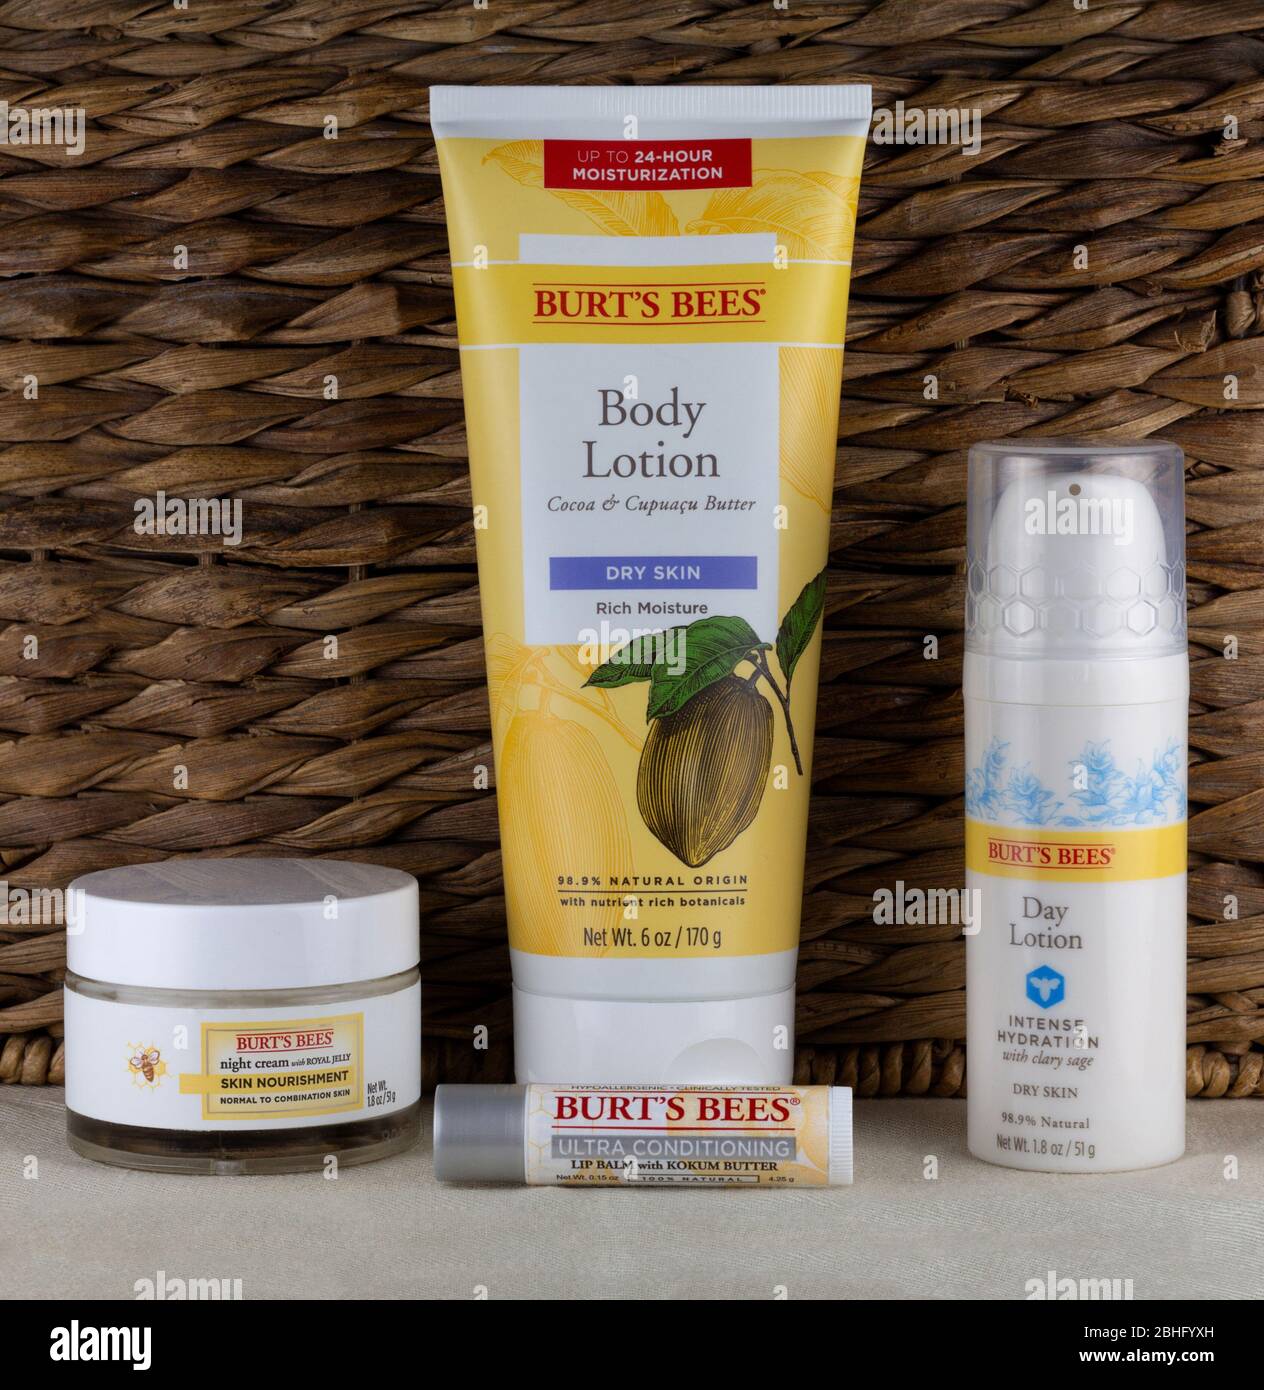 Editoriale illustrativo dei prodotti per la cura della pelle del marchio Burt's Bees realizzati con ingredienti naturali e lavorazioni minime Foto Stock